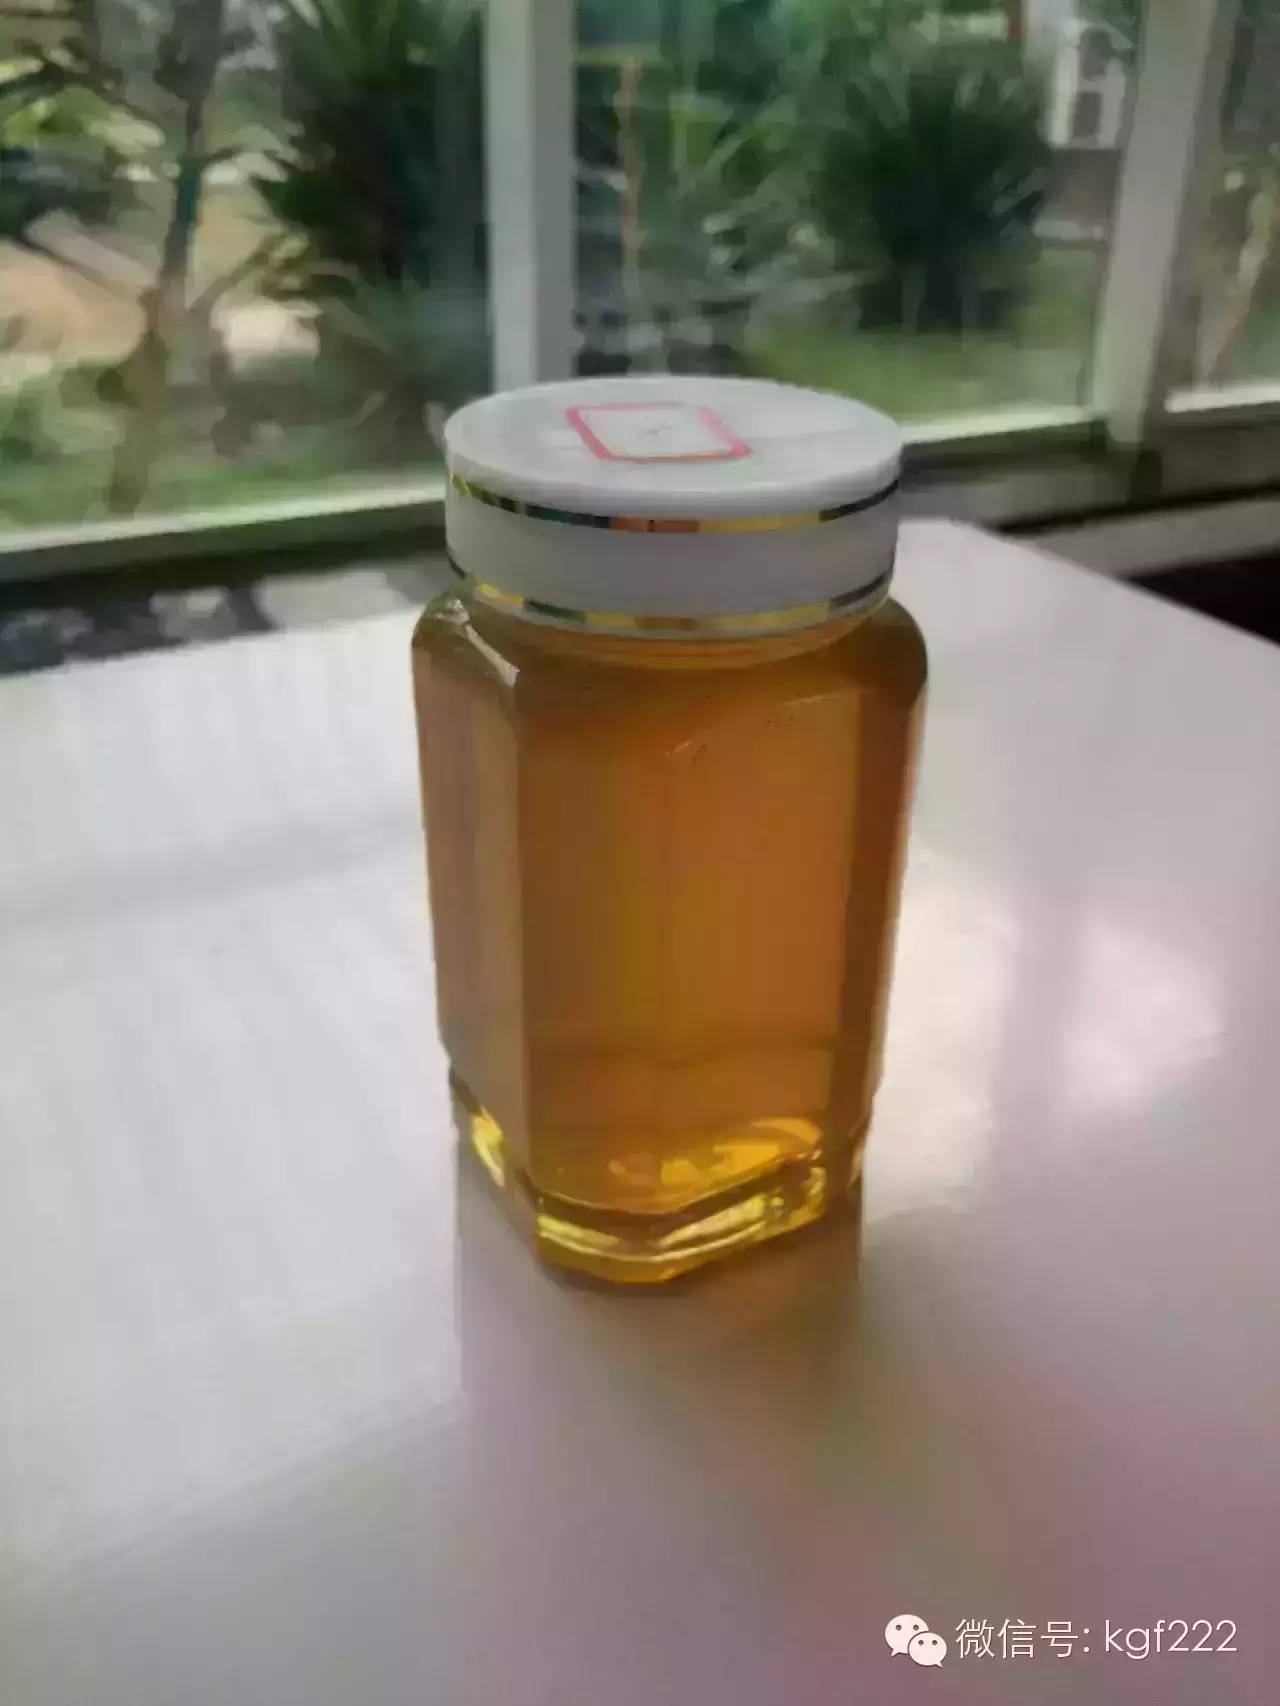 天喔蜂蜜柚子茶价格 蜂蜜公司 蜂蜜苦瓜 蜂蜜生产厂家 红糖蜂蜜祛斑面膜